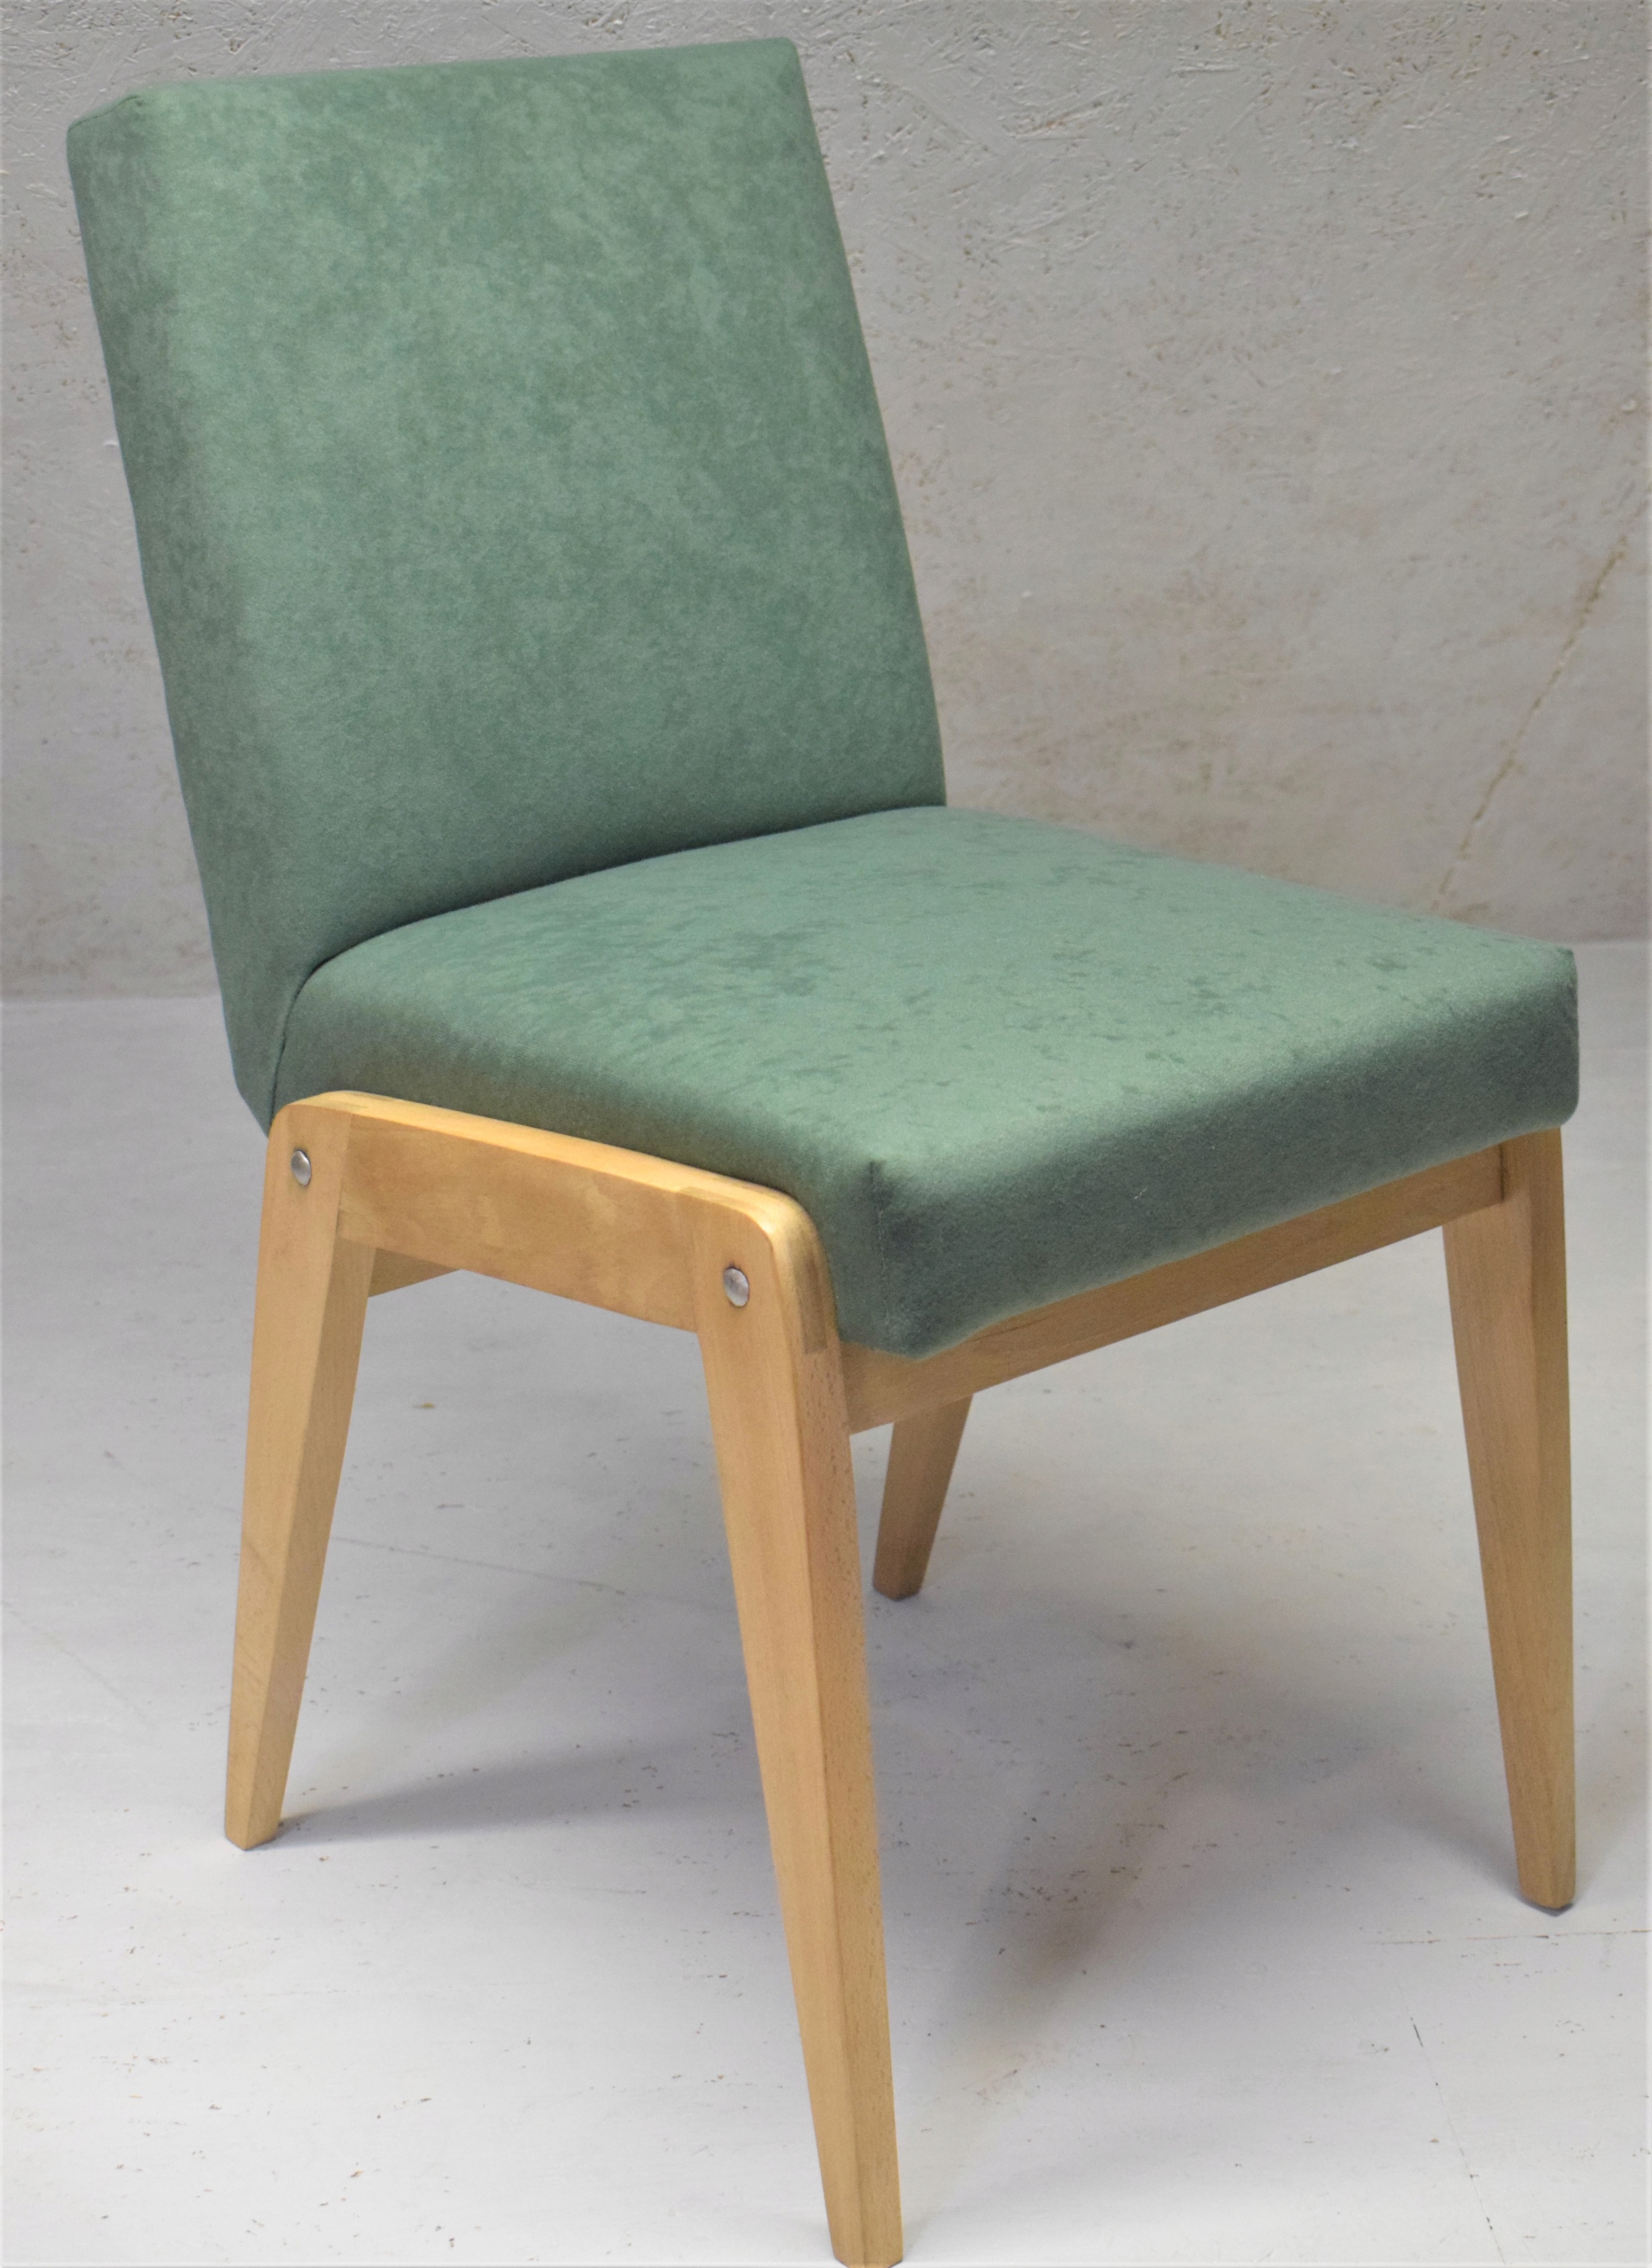 Krzeslo Aga Prl Vintage 300 Zl Allegro Pl Raty 0 Darmowa Dostawa Ze Smart Liszki Stan Odnowiony Przez Sprzedawce Id Oferty 9121146653